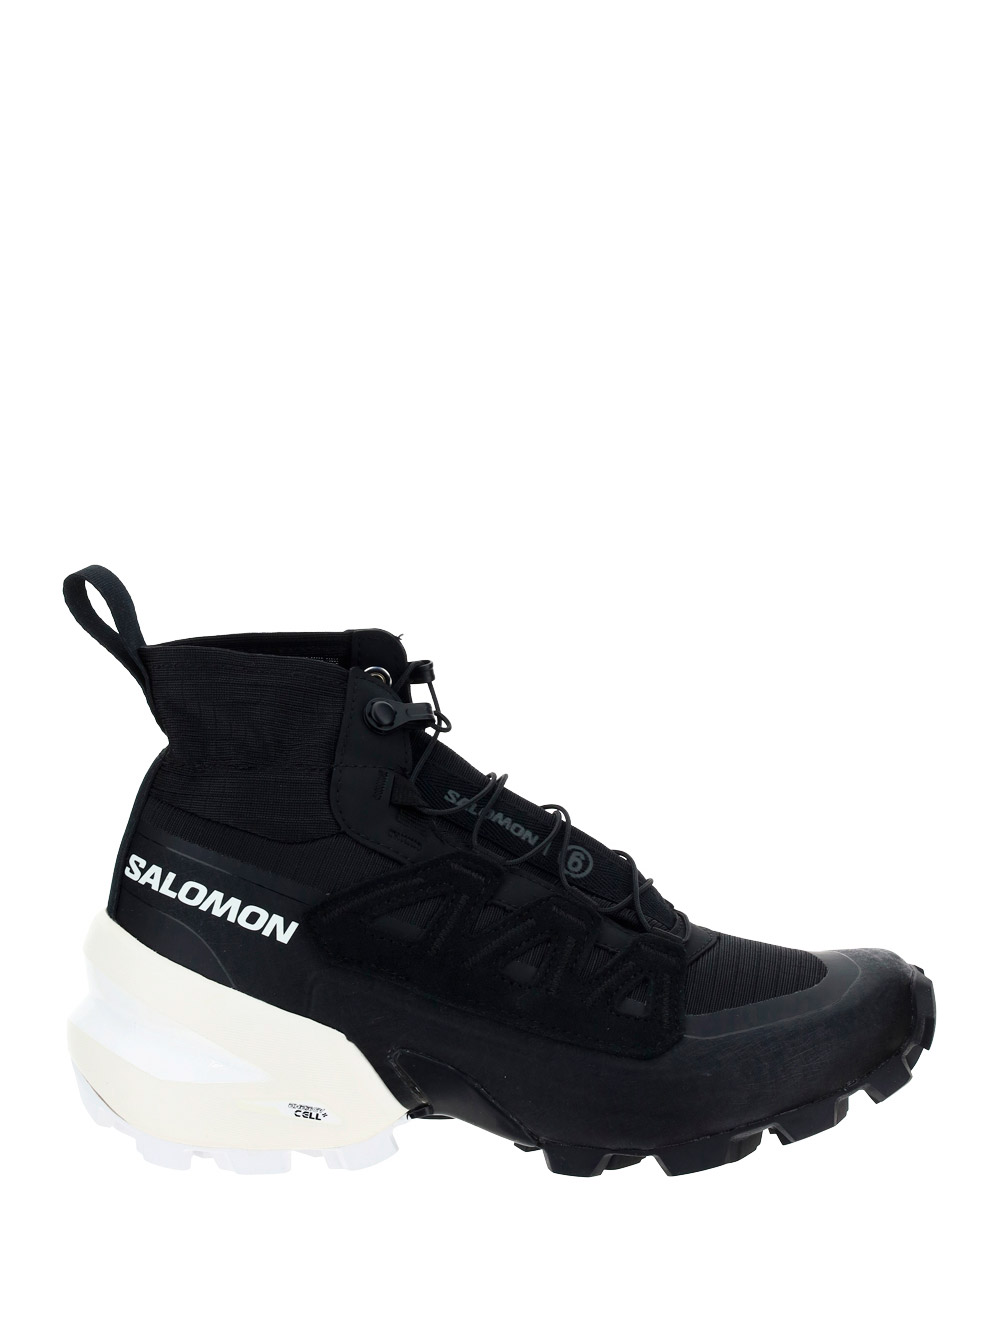 Mm6 Maison Margiela X Salomon Cross High Sneakers In White/black | ModeSens